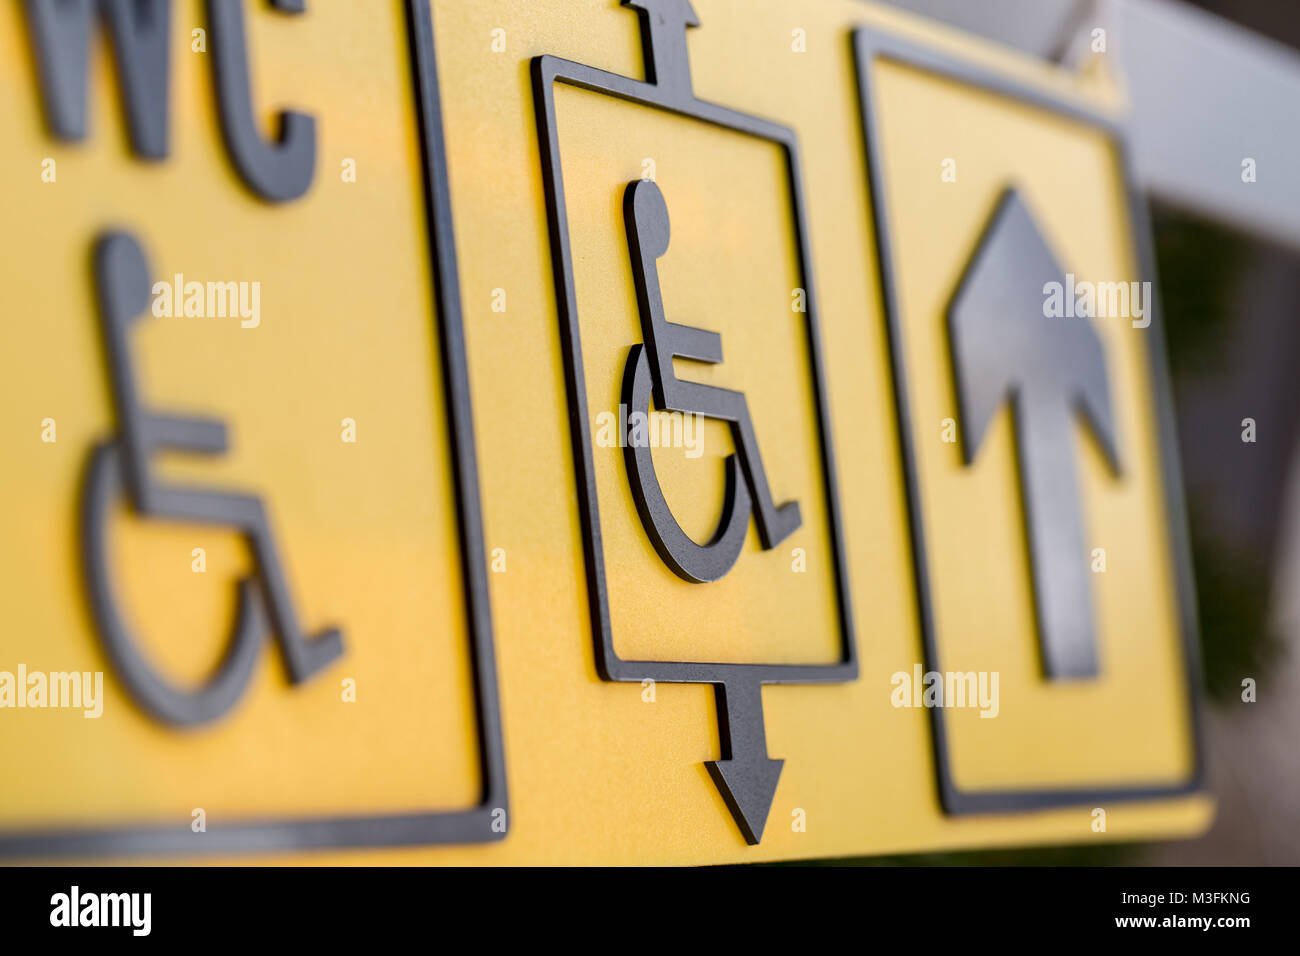 Behinderte Person Zeichen gelbe Hinweisschilder für behinderte Menschen. Ausgewählte konzentrieren. Stockfoto